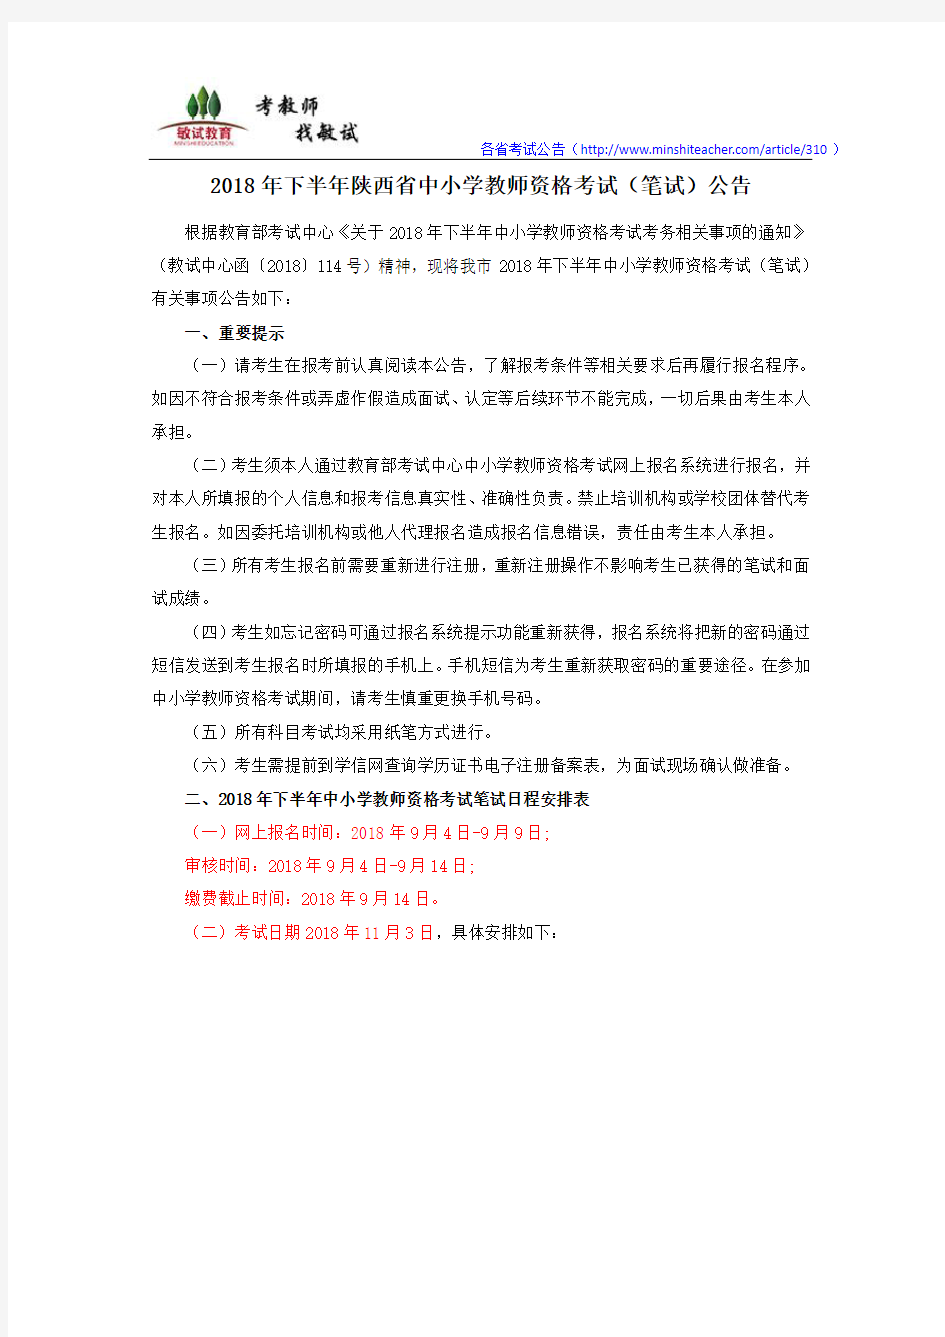 2018下半年陕西省中小学教师资格考试(笔试)公告